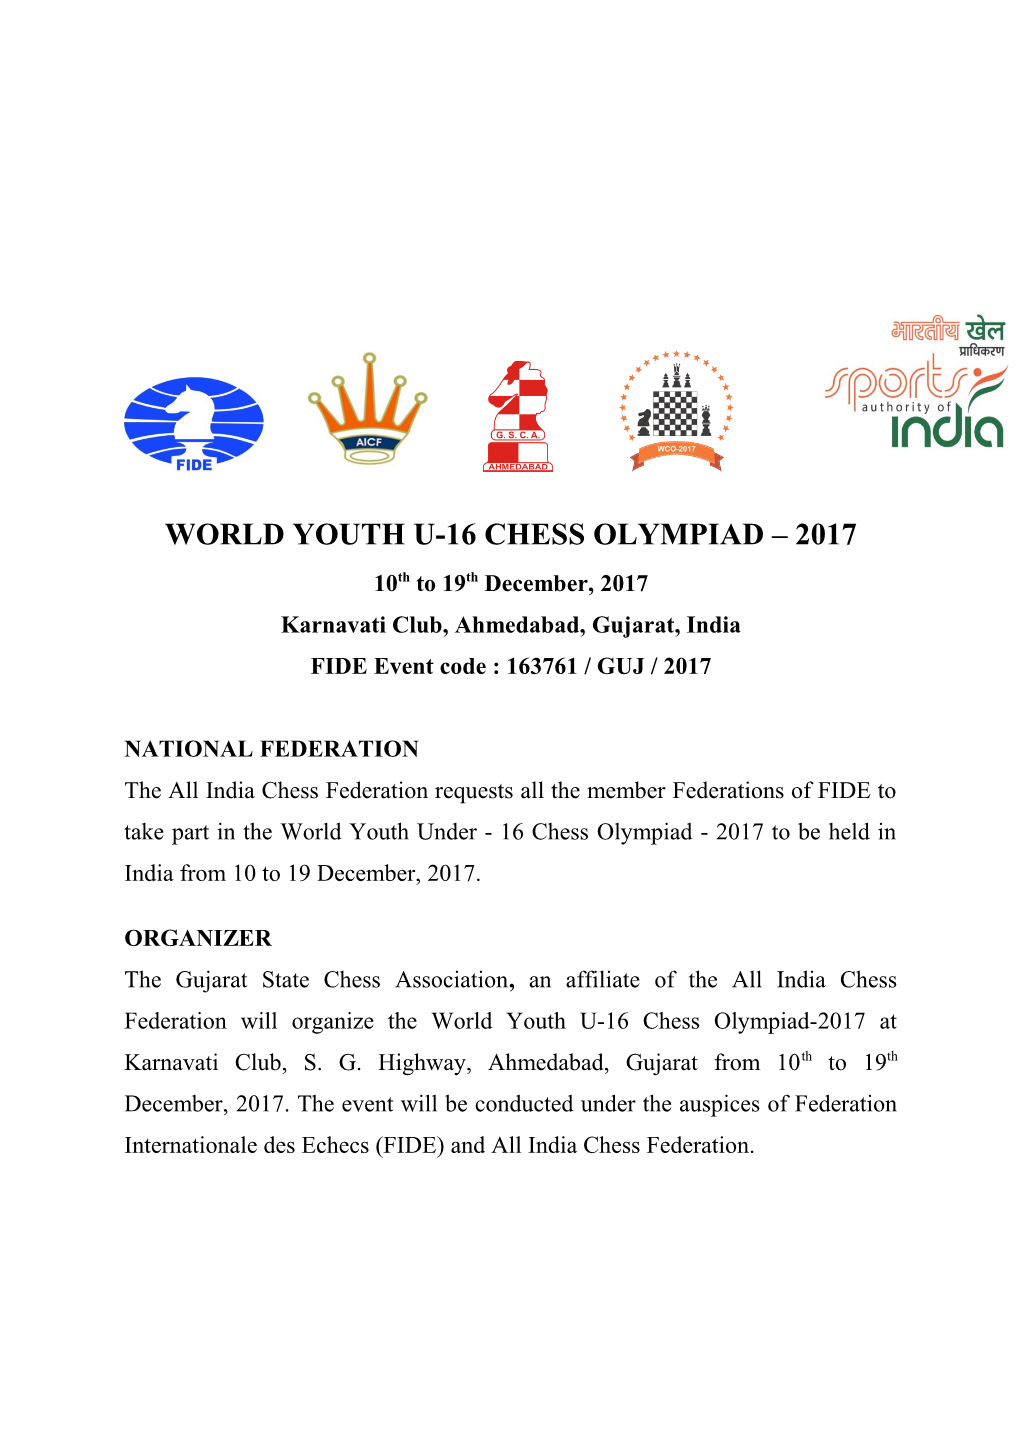 World Youth U-16 Chess Olympiad 2017